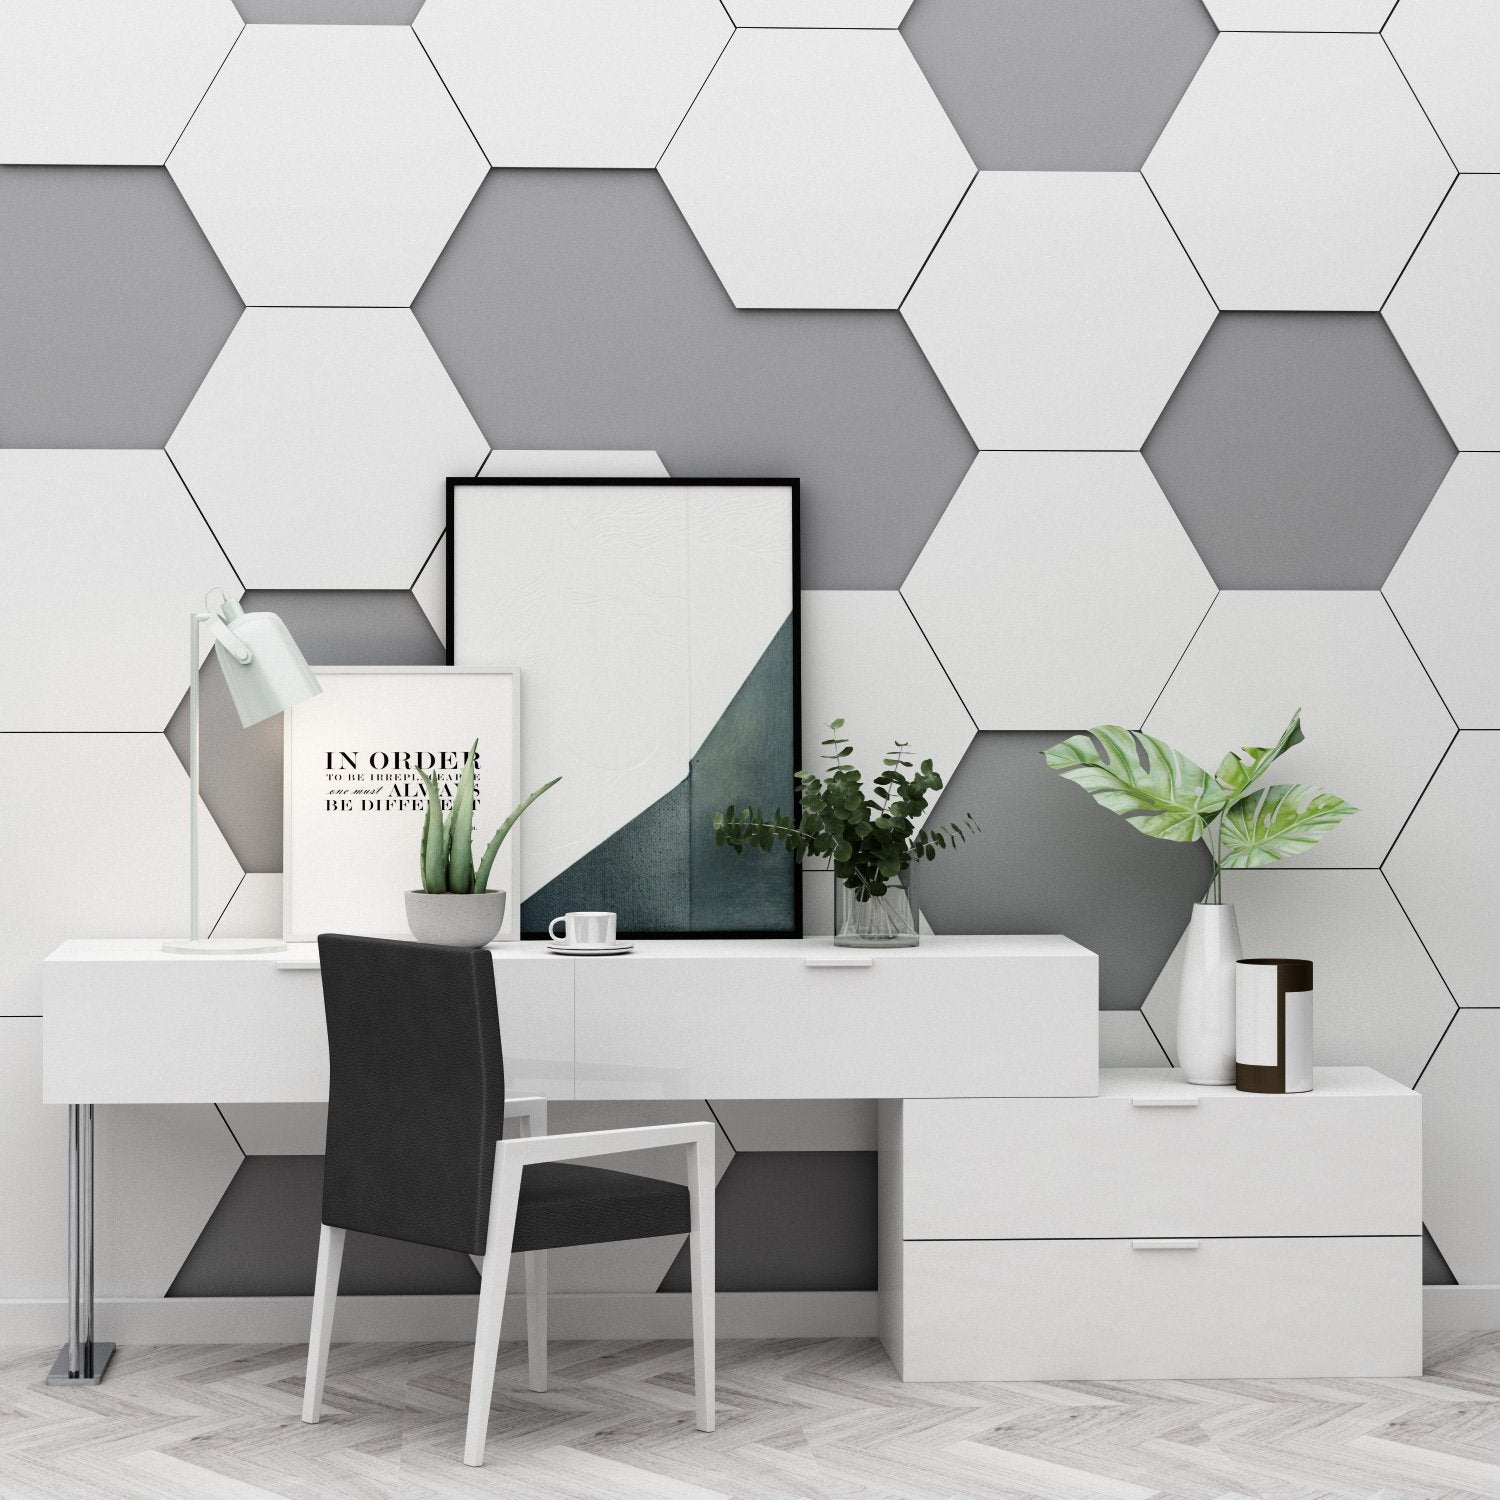 Hexagon Shape Wall Design - HD Wallpaper 